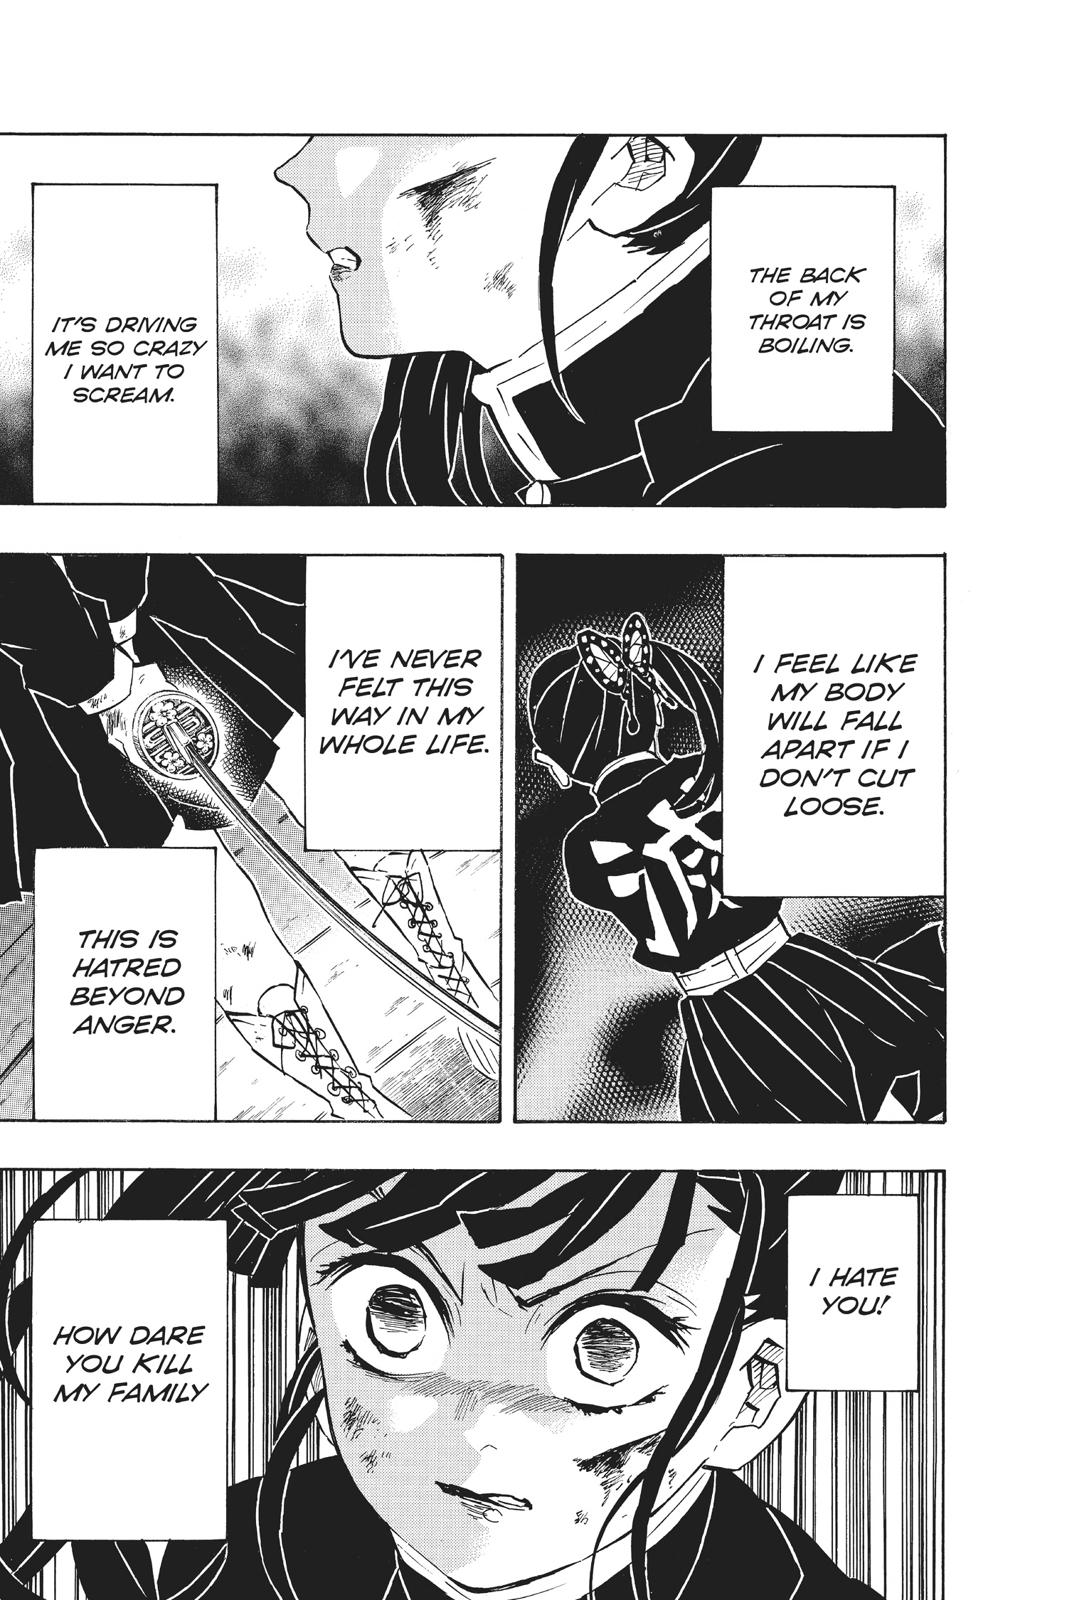 Demon Slayer Manga Manga Chapter - 158 - image 2